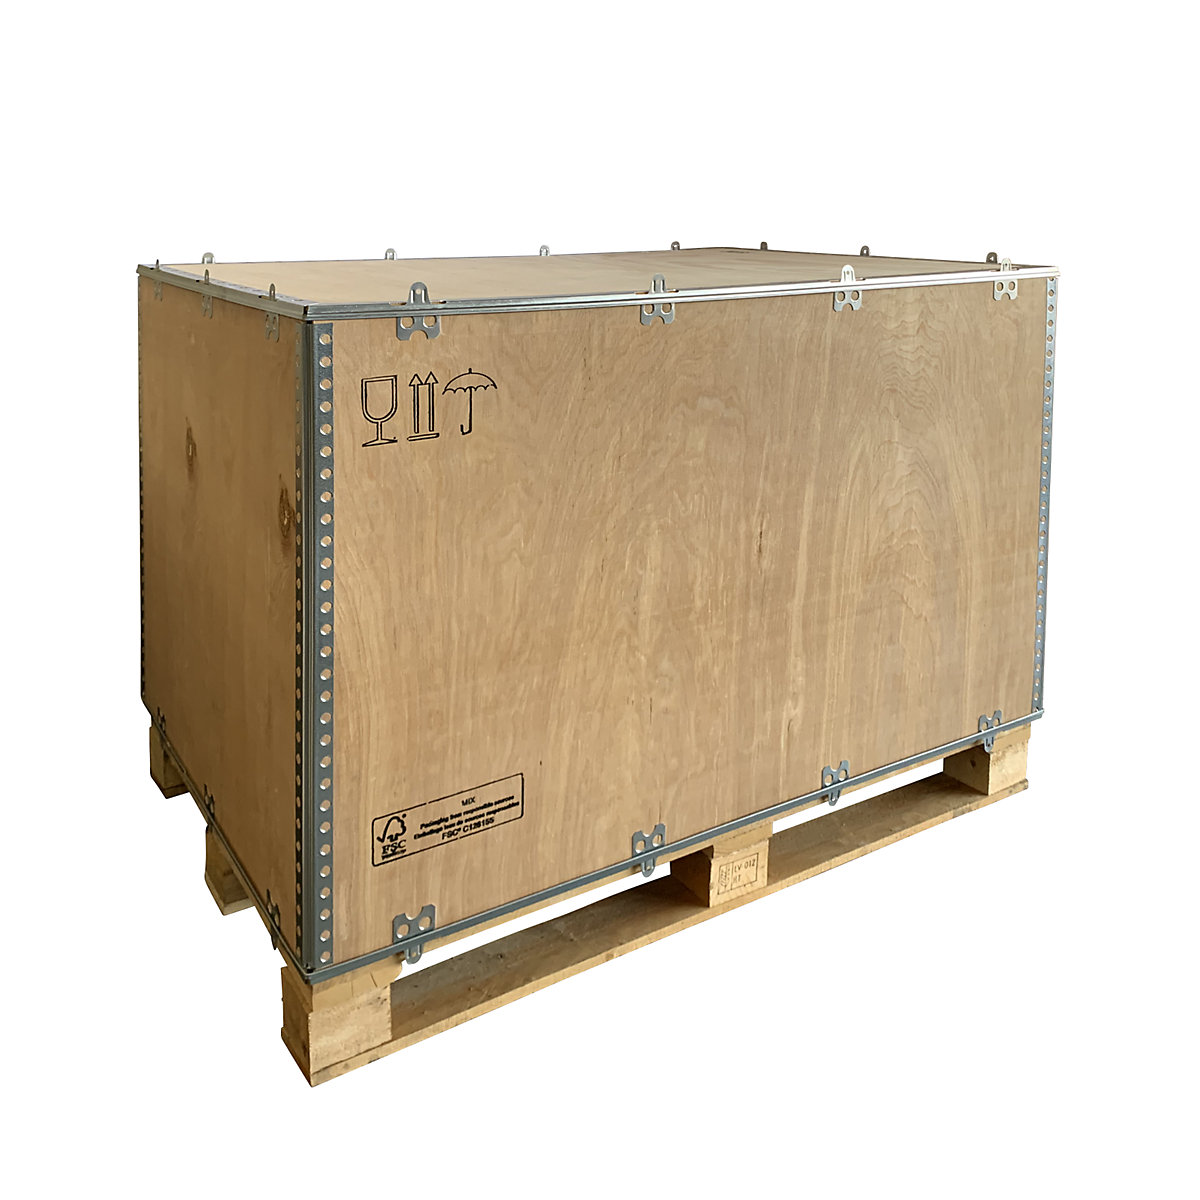 Opvouwbare houten kist, standaard, l x b x h = 1180 x 780 x 750 mm, vanaf 1 stuk-3